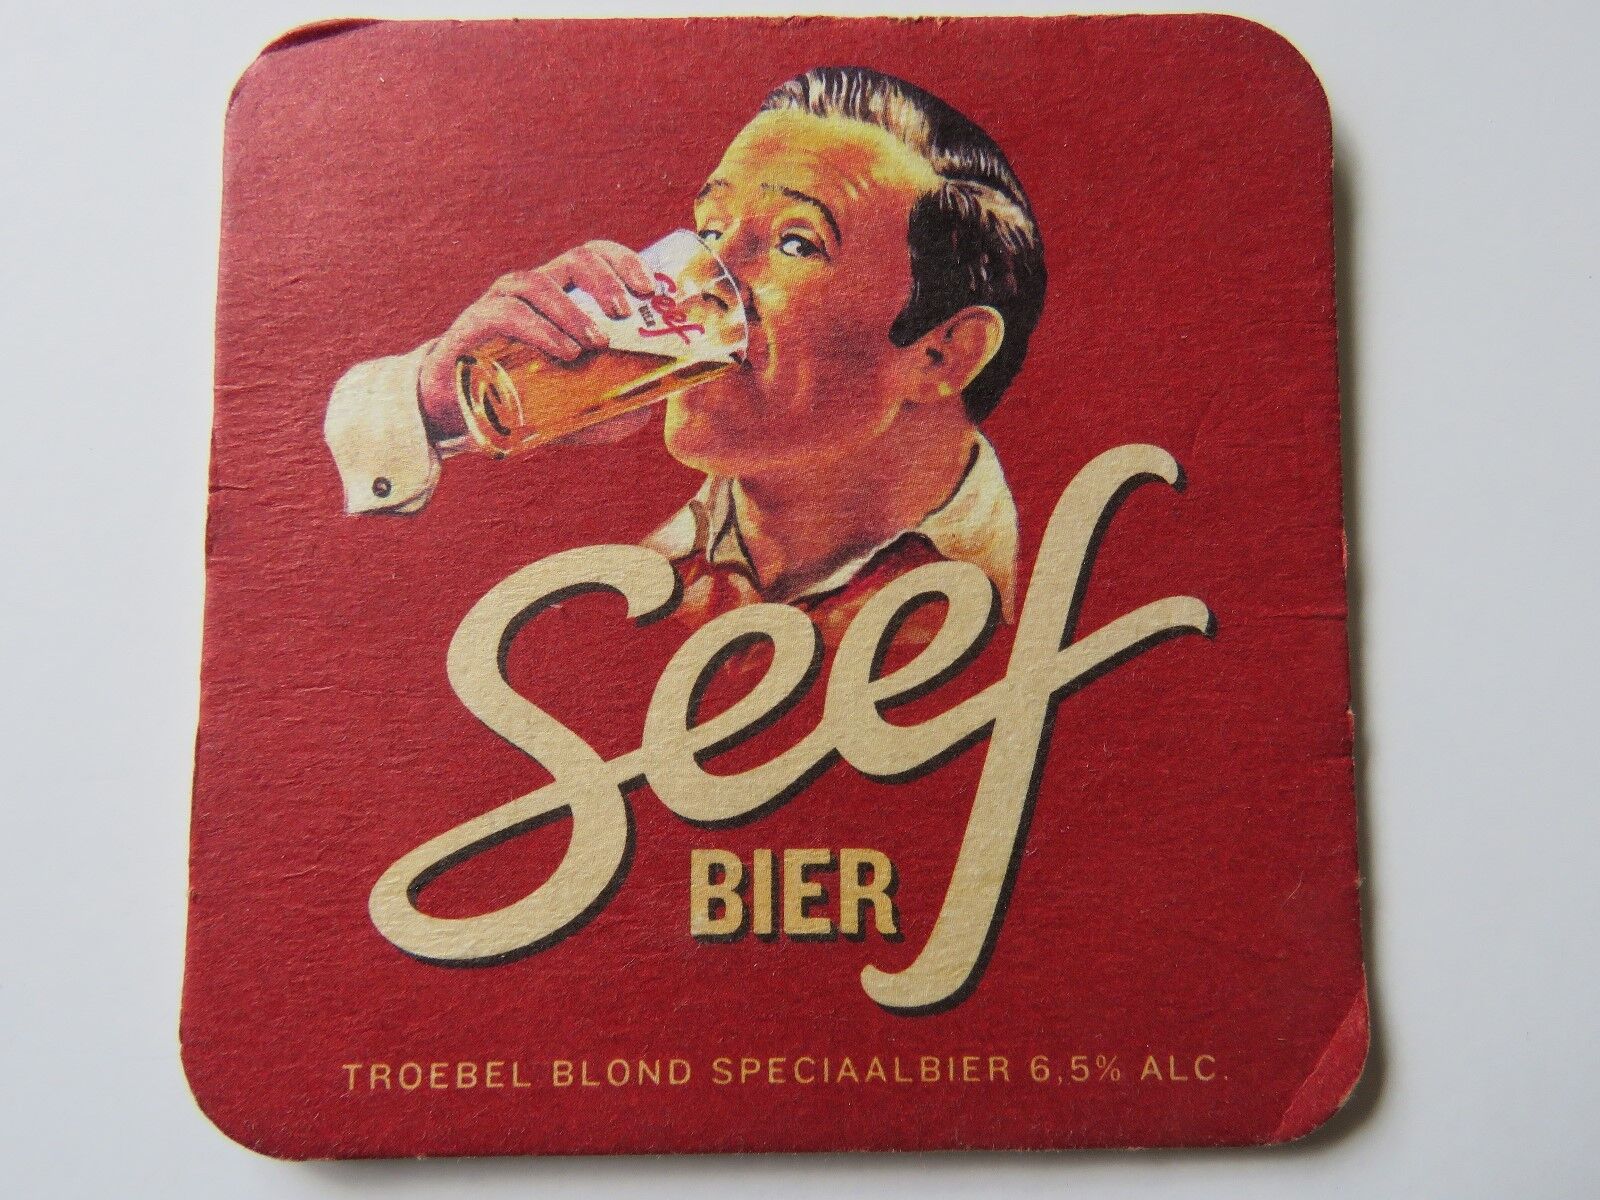 Beer Brewery Coaster ~ Brouwerij Den Toeteler SEEF Troebel Blond Bier ~ BELGIUM